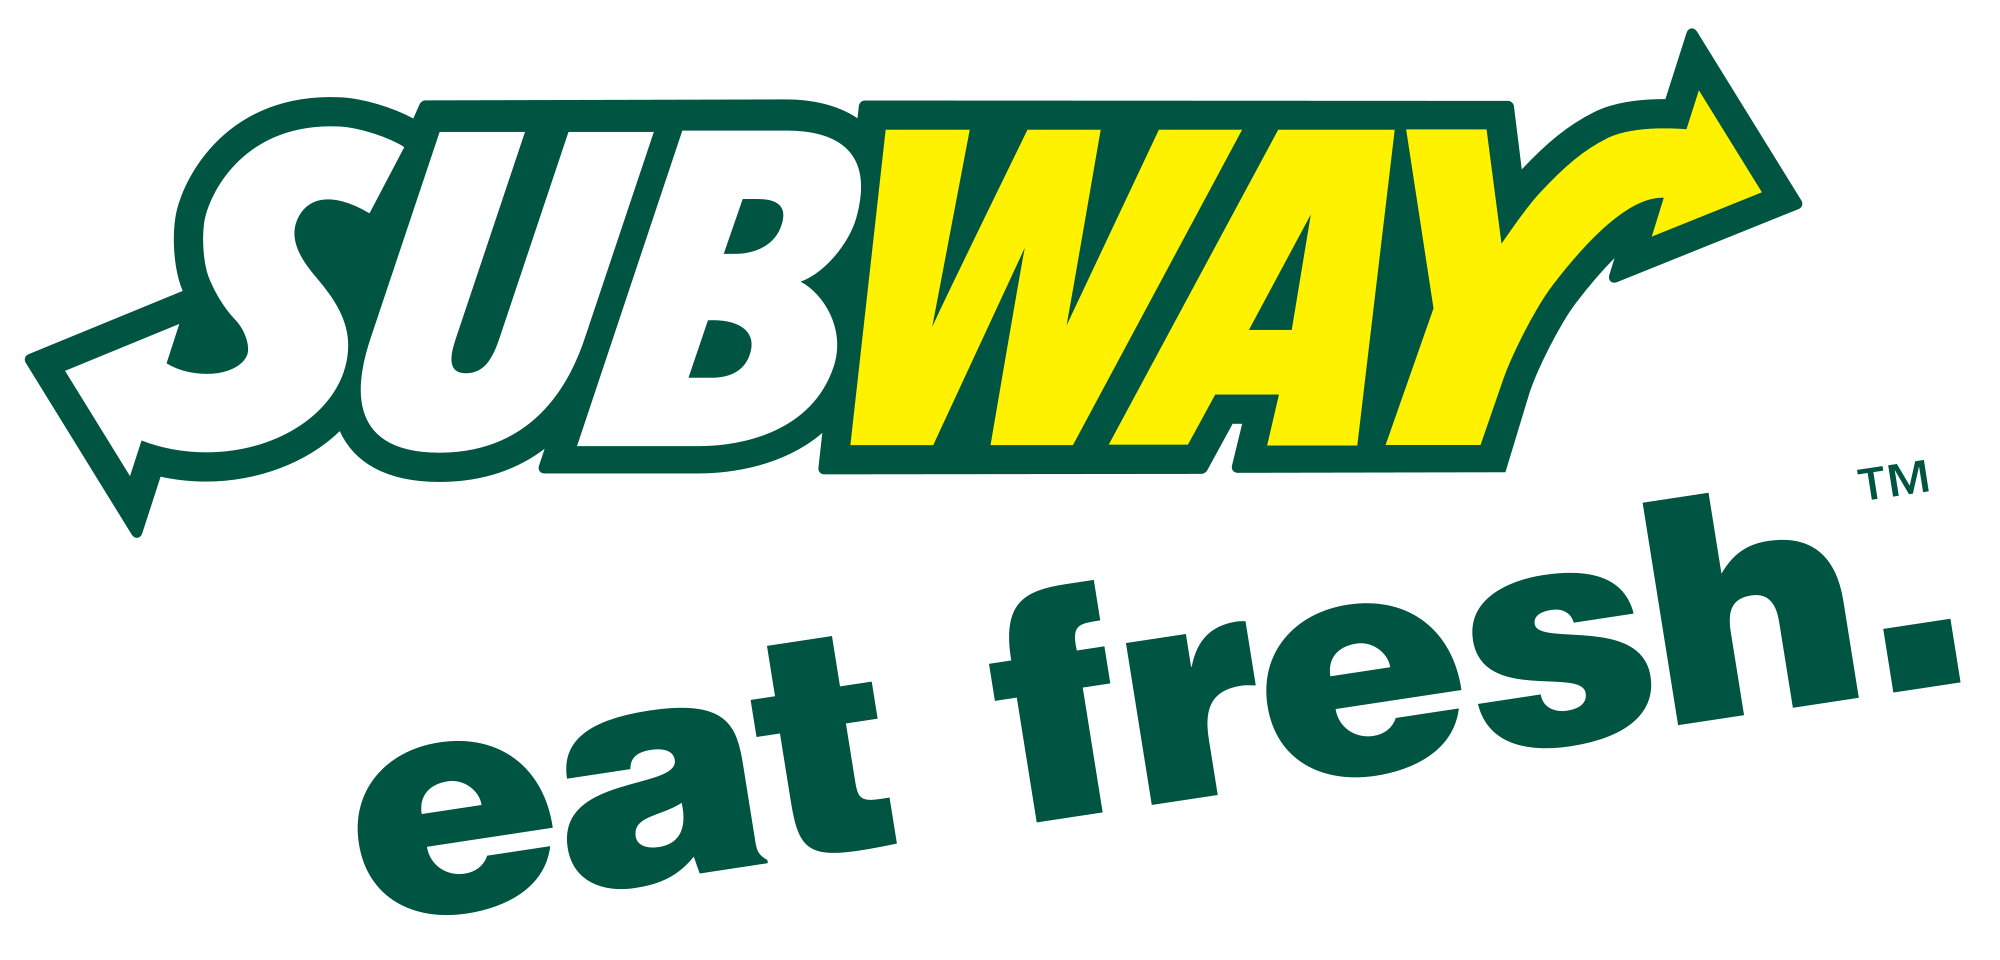 Subway Logo - Subway, Transparent background PNG HD thumbnail